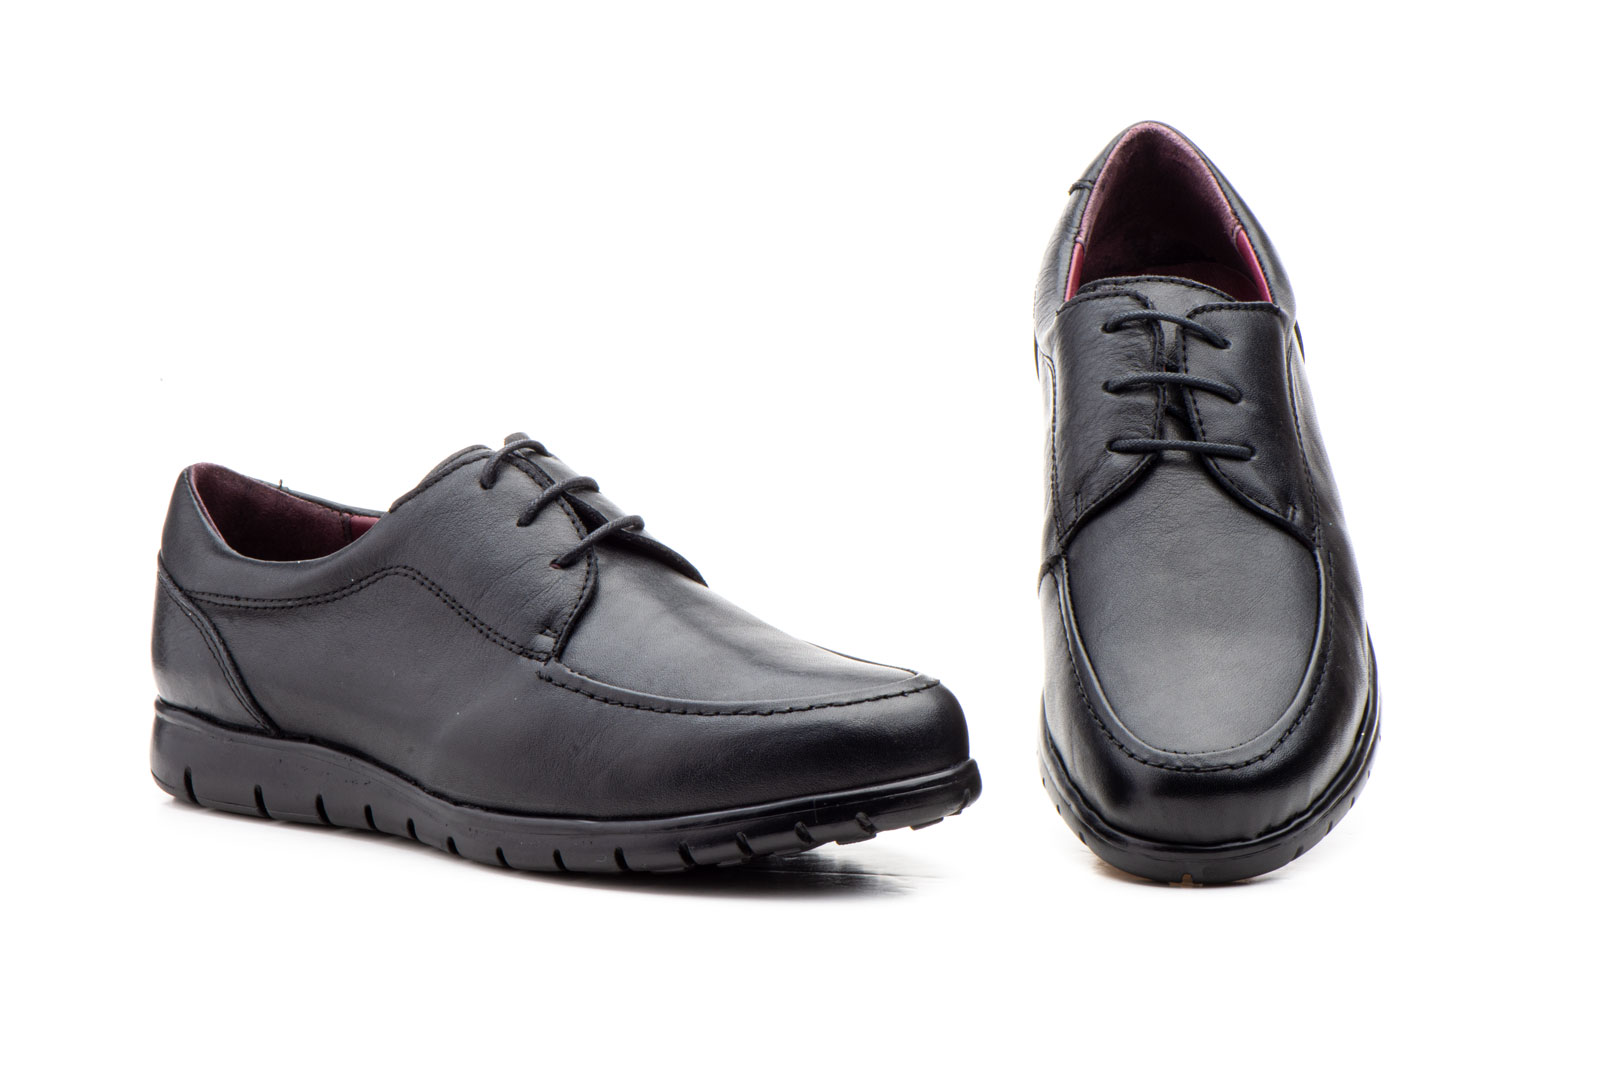 Zapatos Hombre Piel Negro Cordones  -  Ref. GI-7002 Negro